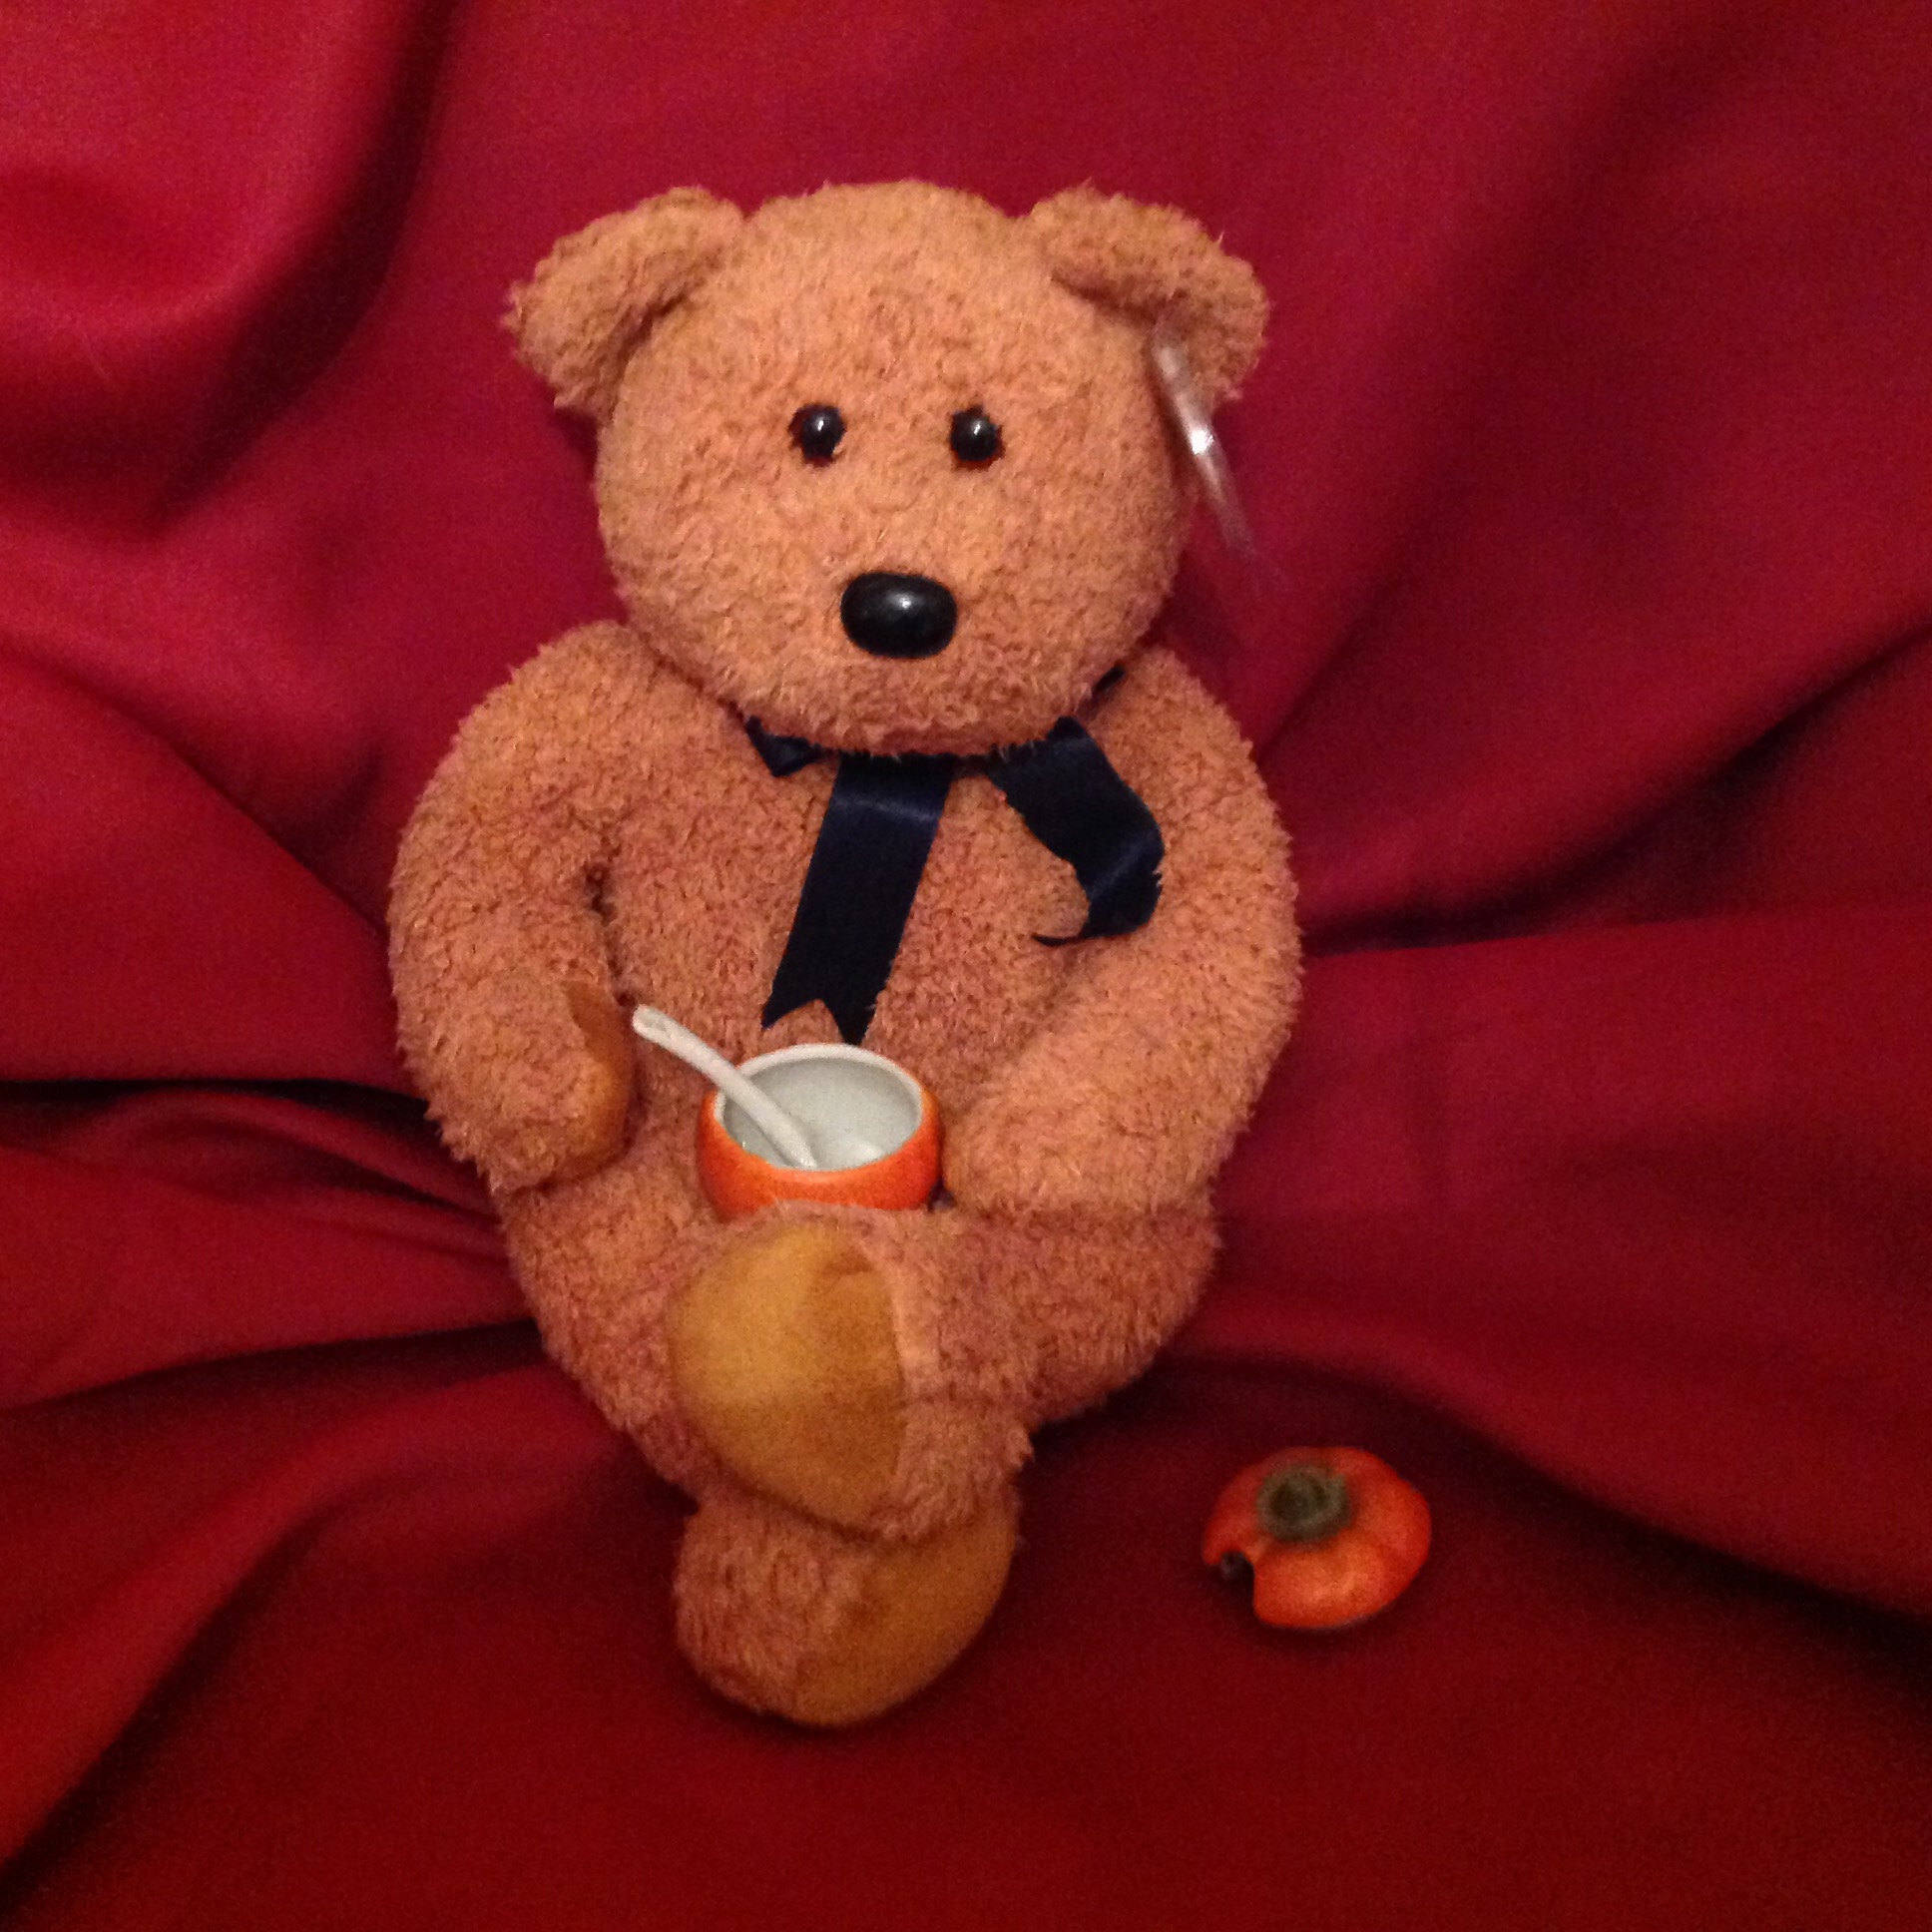 Mr Bean Teddy Retro TV Teddy Spielzeug Sammlerstück 1990er Jahre Vintage  Geschenk Rowan Atkinson - .de